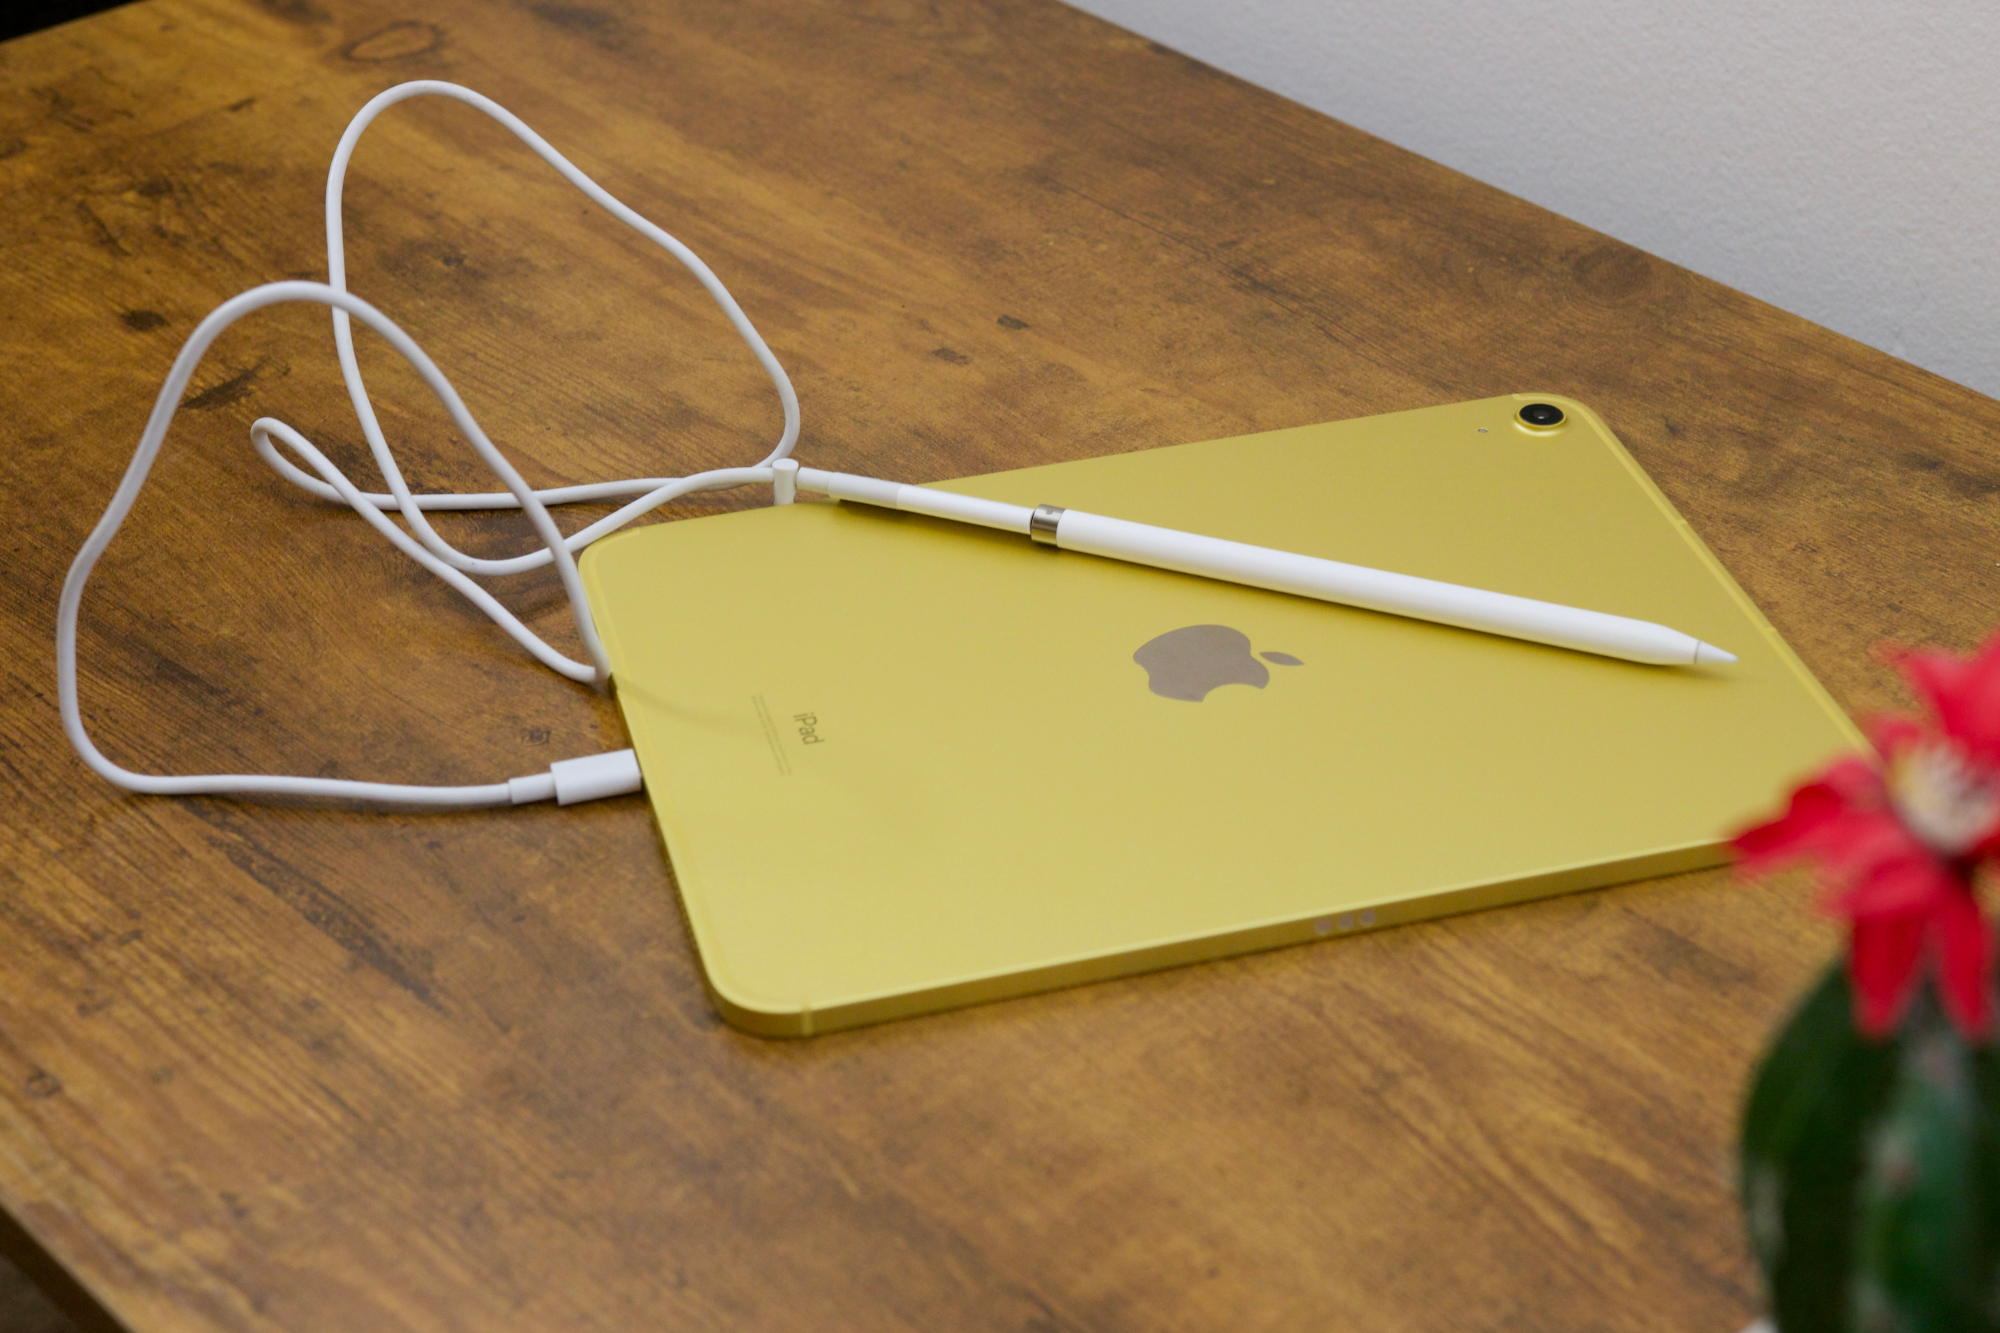 iPad (2022) с Apple Pencil, подключенным через USB-C кабель и адаптер